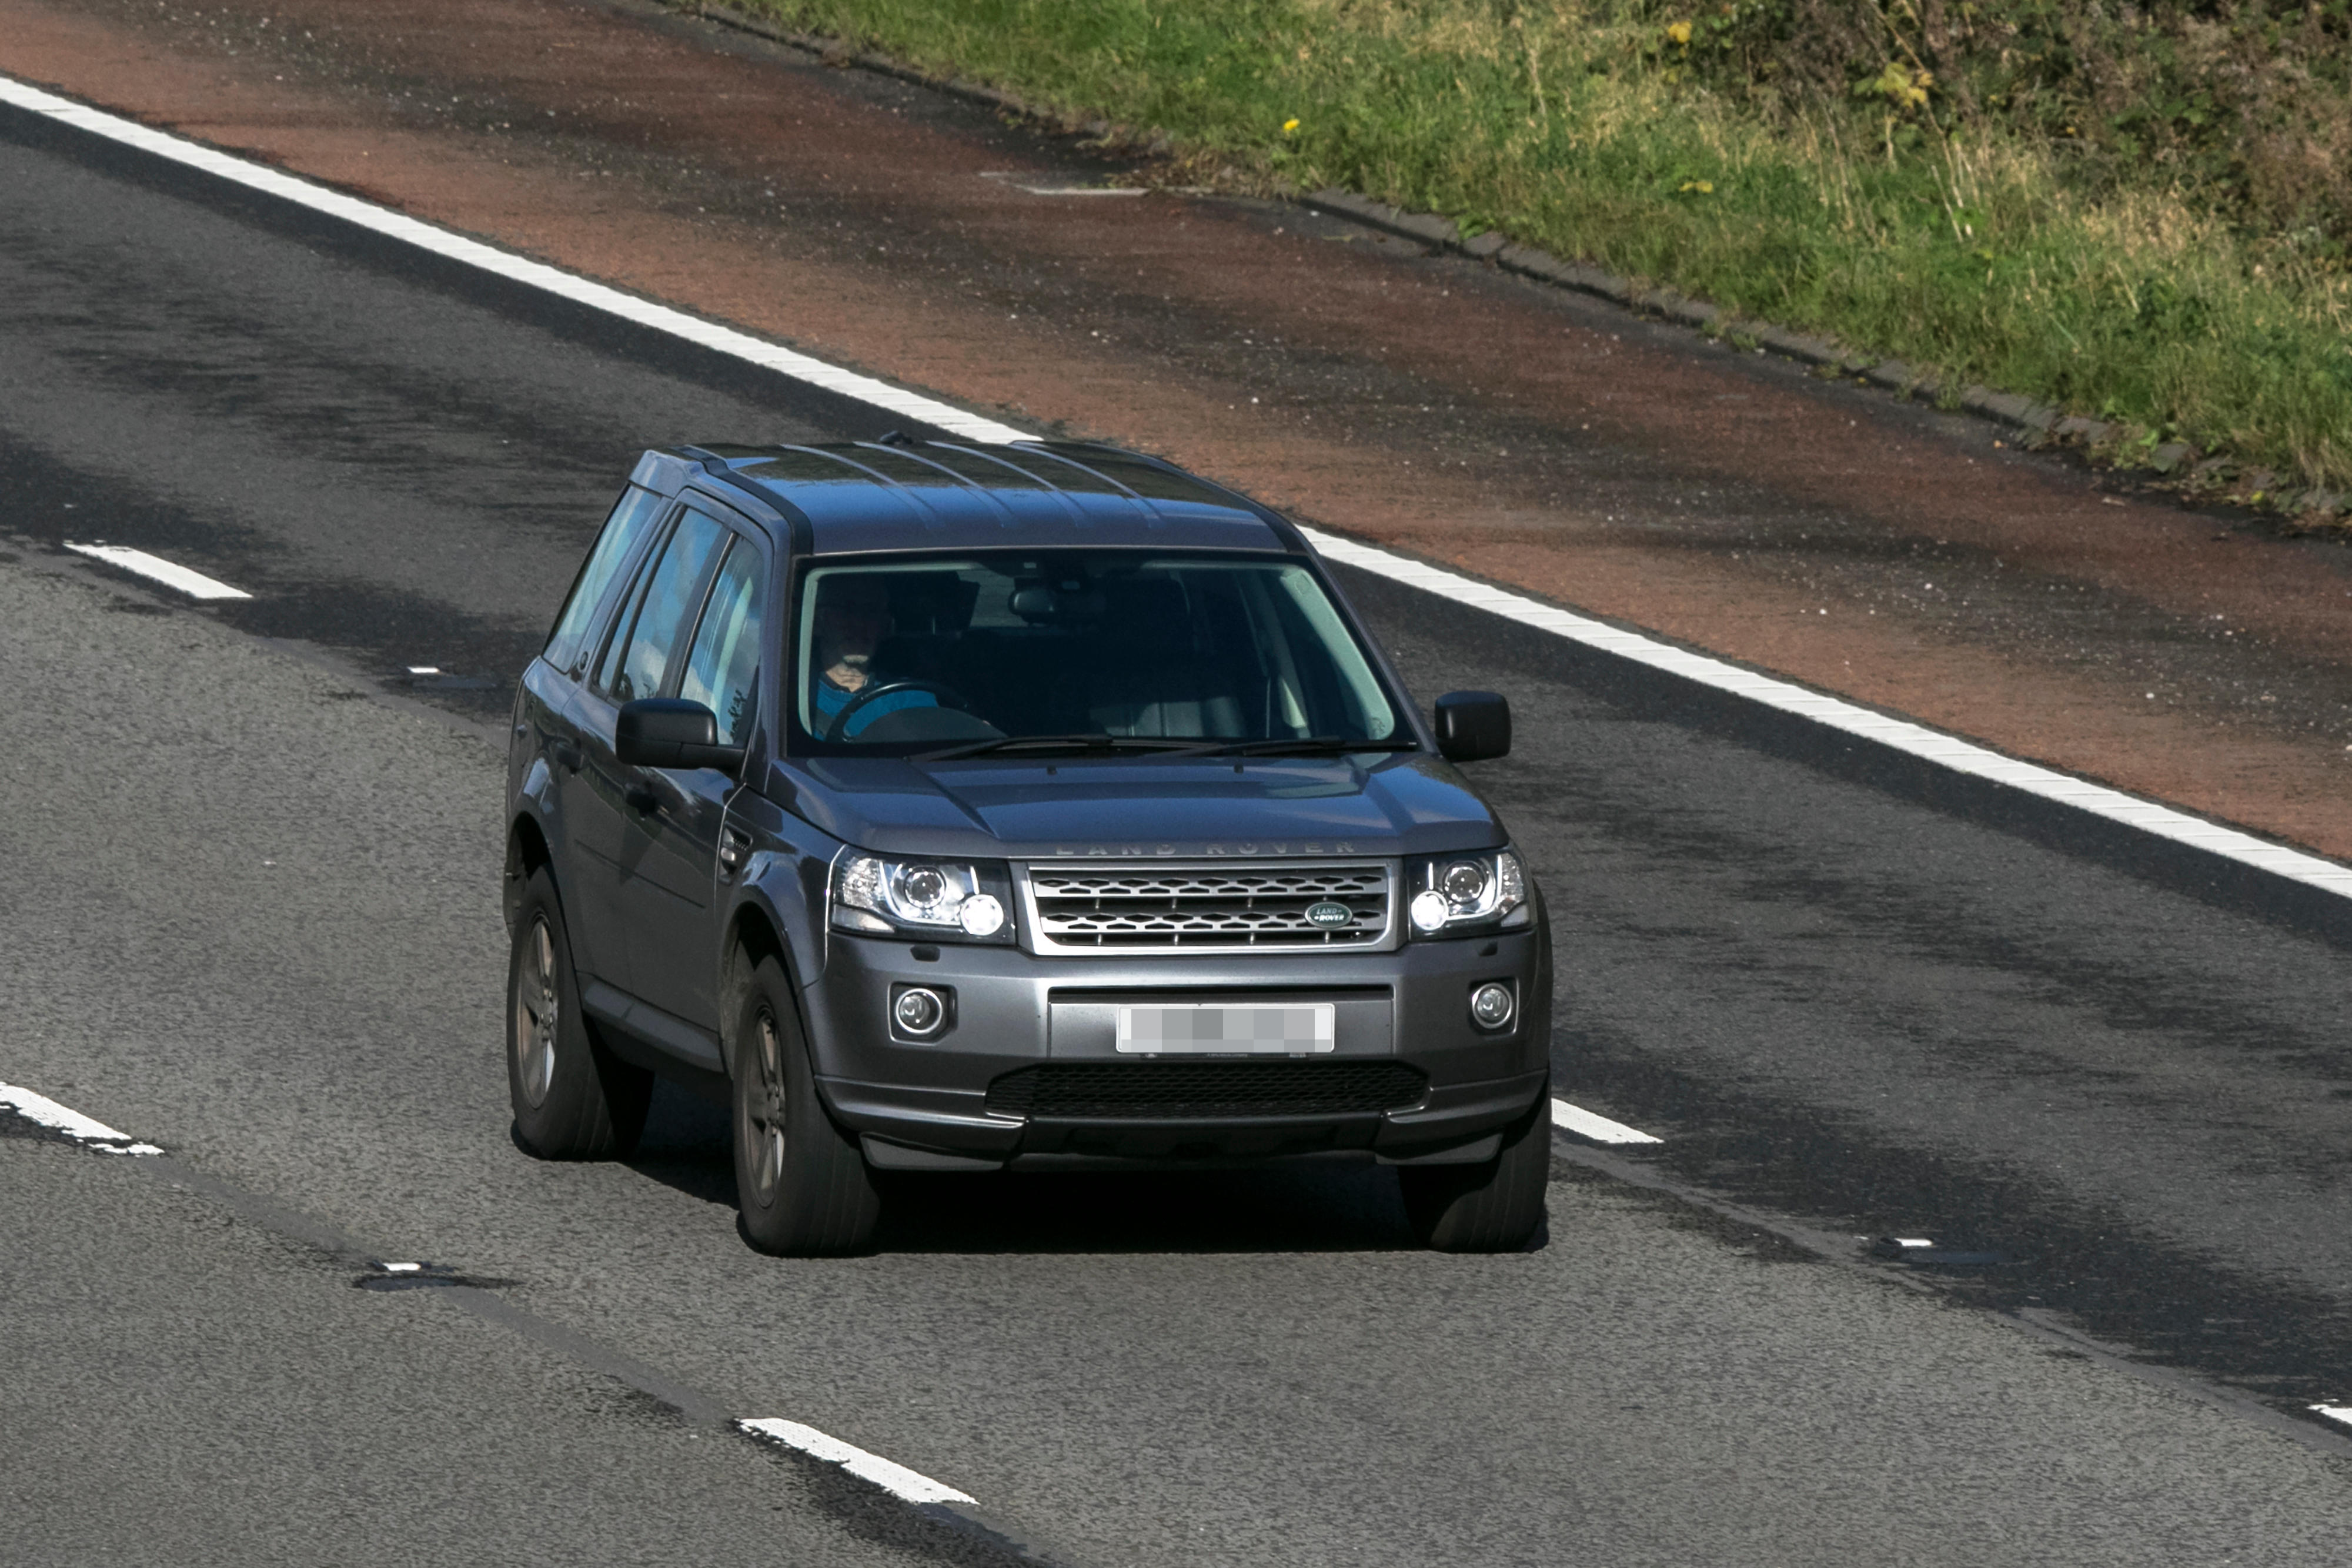 Laut Experten verfügt der Land Rover Freelander über eine „gewaltige Geländegängigkeit“.